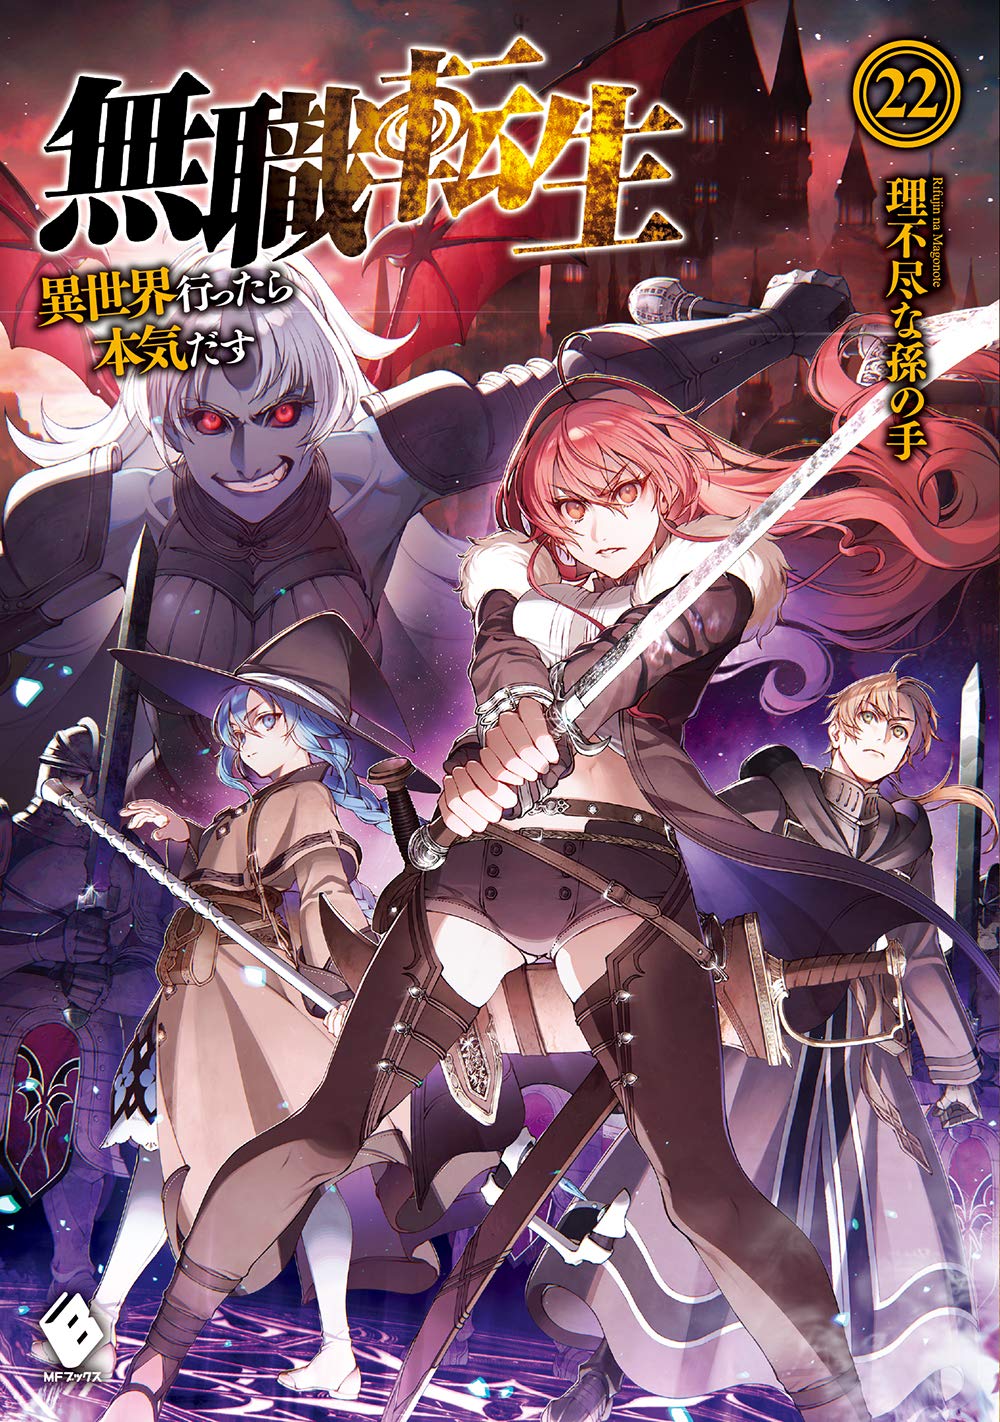 Mushoku Tensei: Jobless Reincarnation Japanese light novel volume 22 front cover